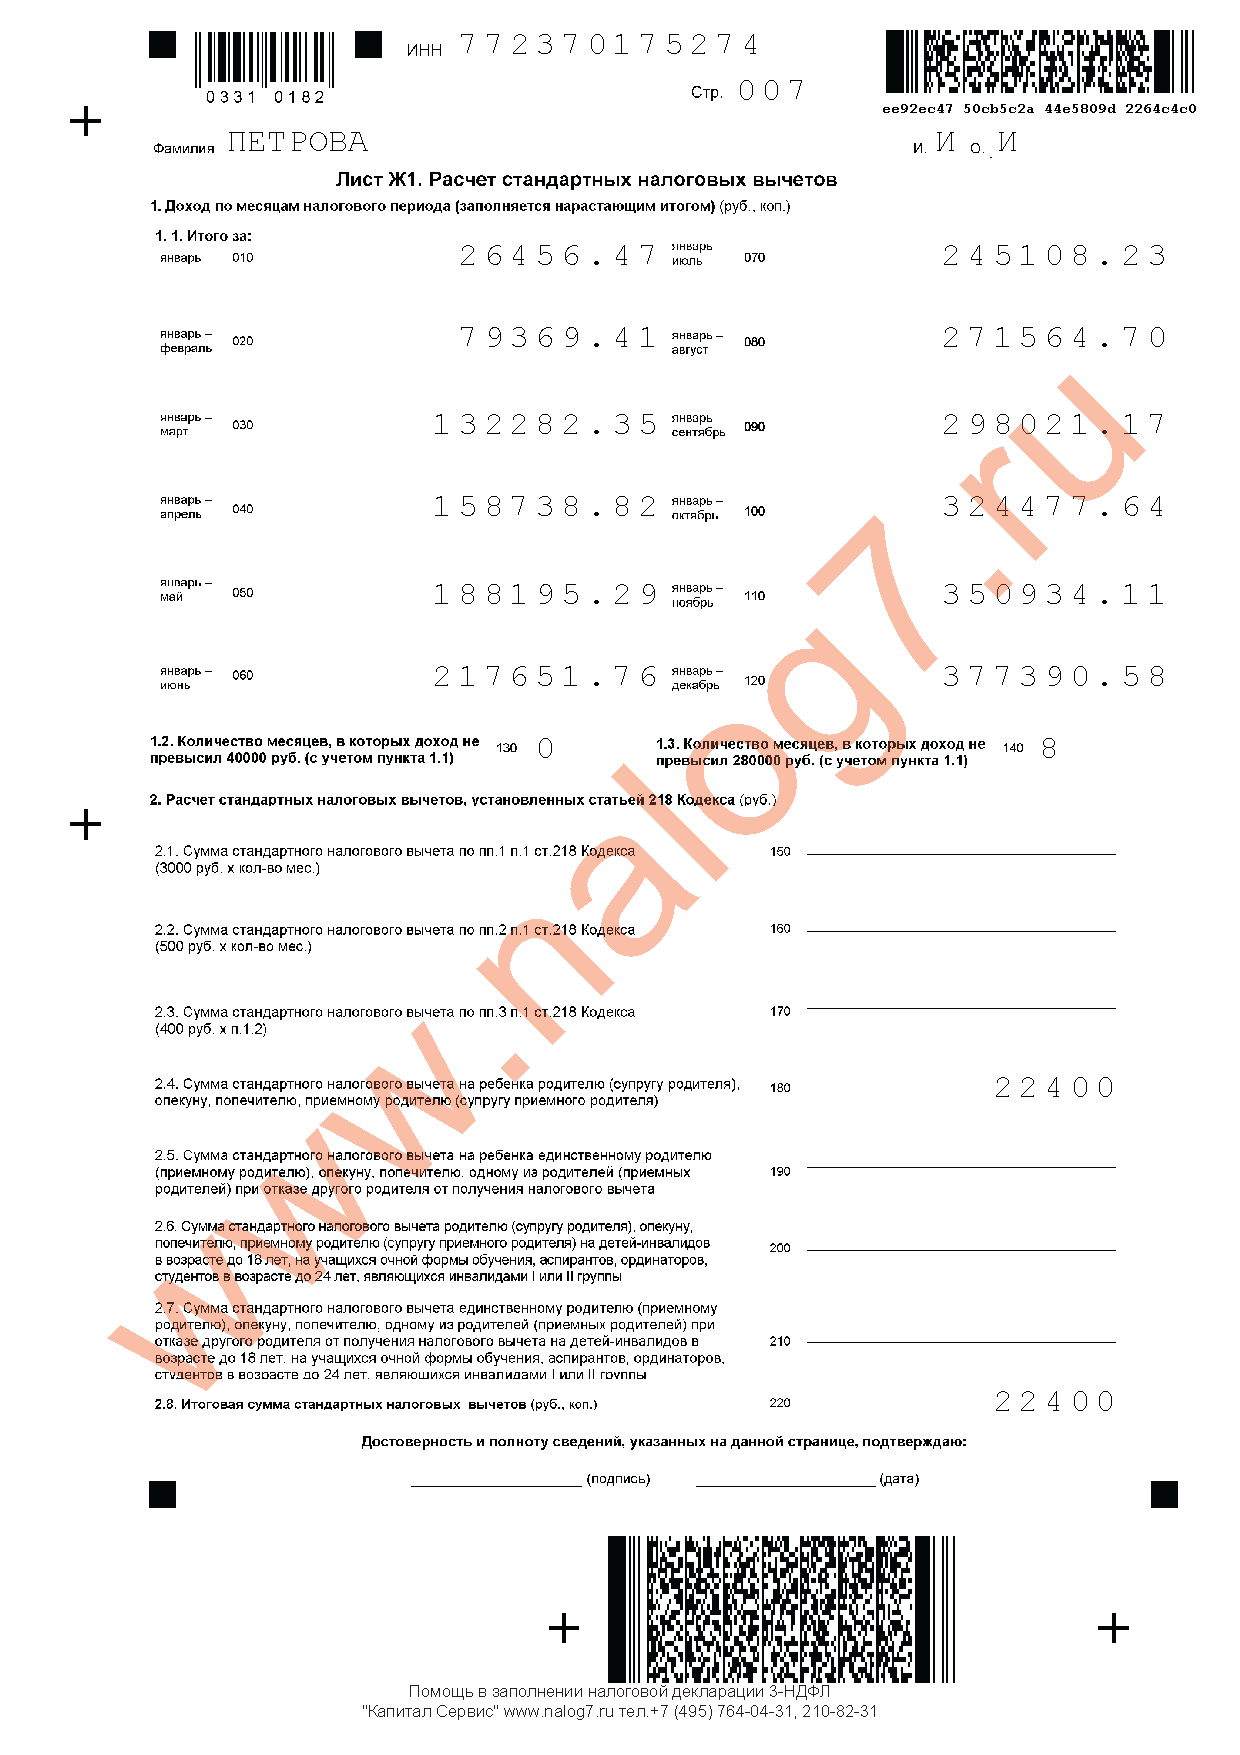 Пример заполнения налоговой декларации 3-НДФЛ за 2013 год при оплате лечения и обучения